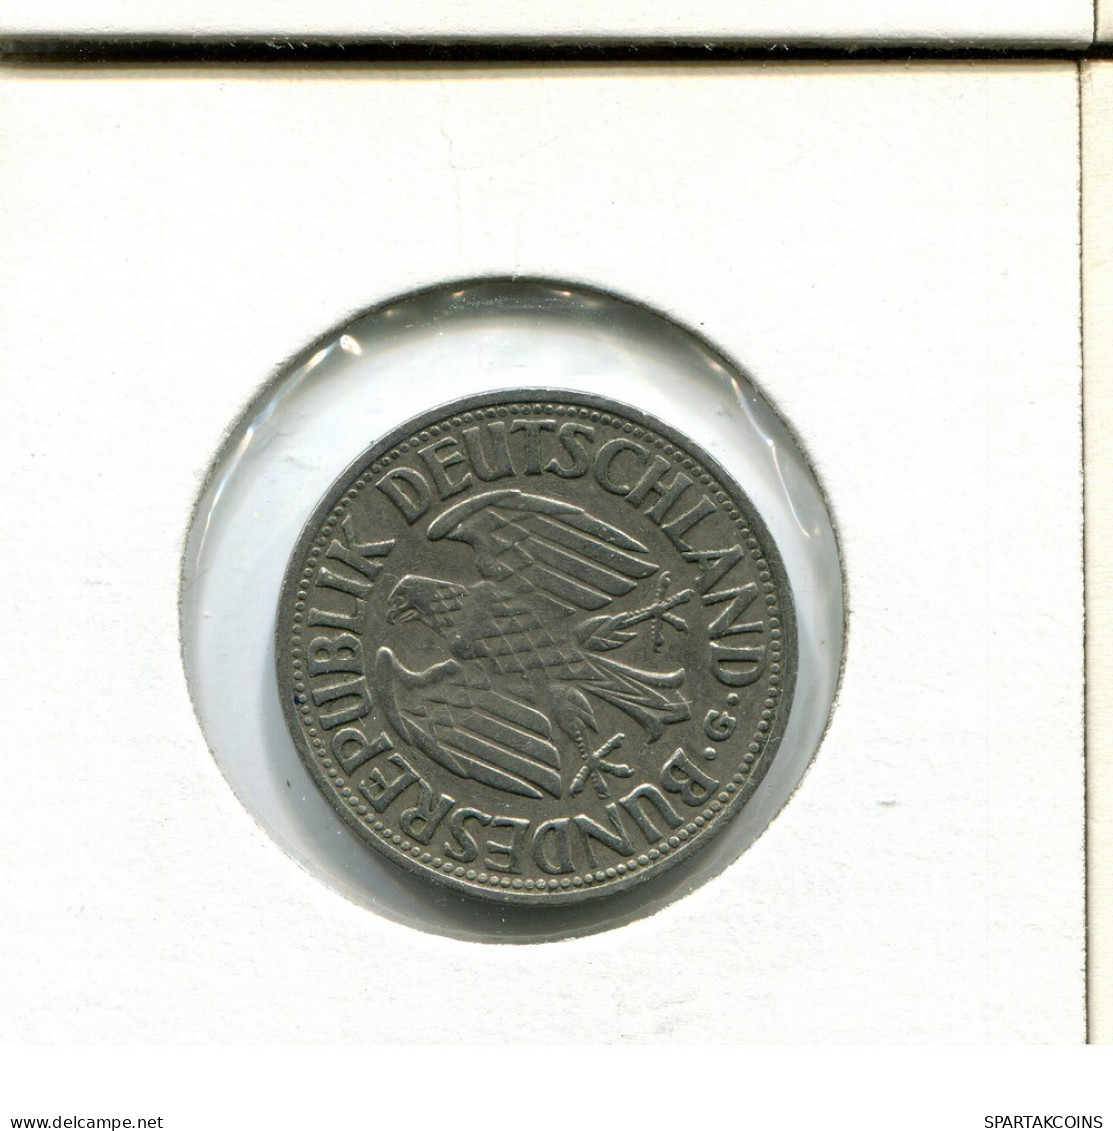 1 DM 1950 G BRD ALEMANIA Moneda GERMANY #AU738.E.A - 1 Marco